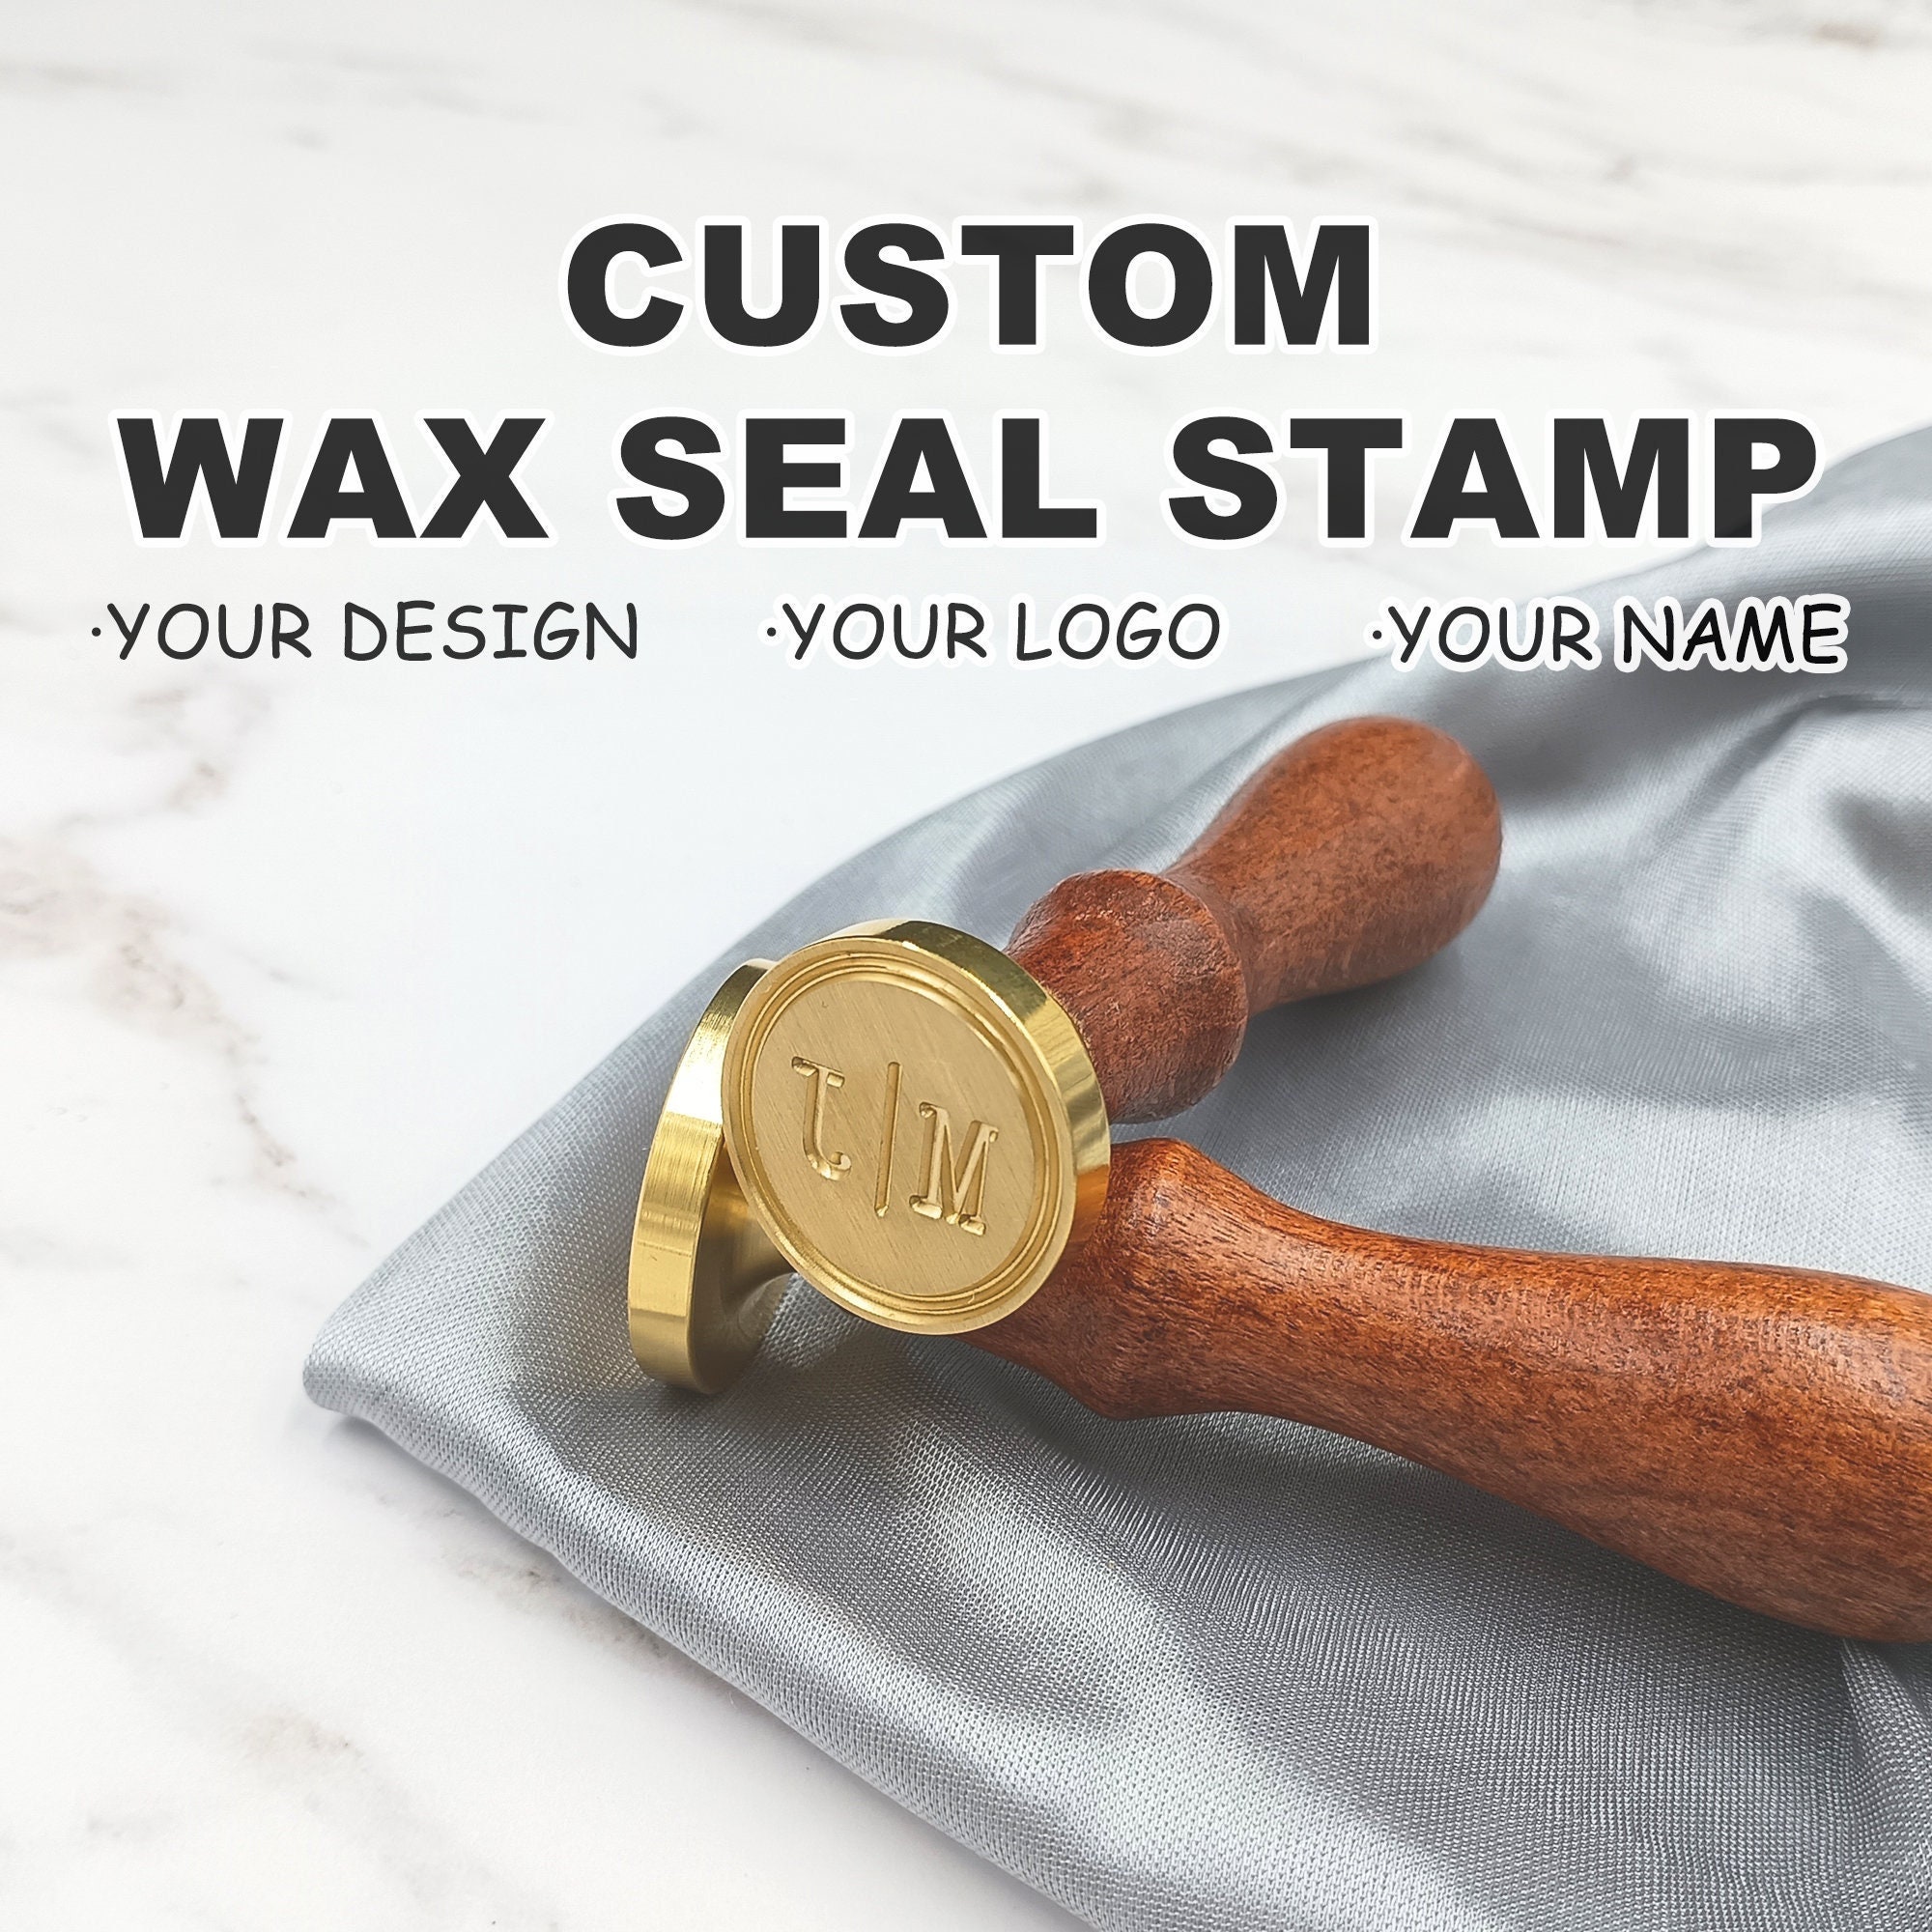  CALIYO Wax Seal Stamp kit, Wax Seal Kit,Vintage Wax